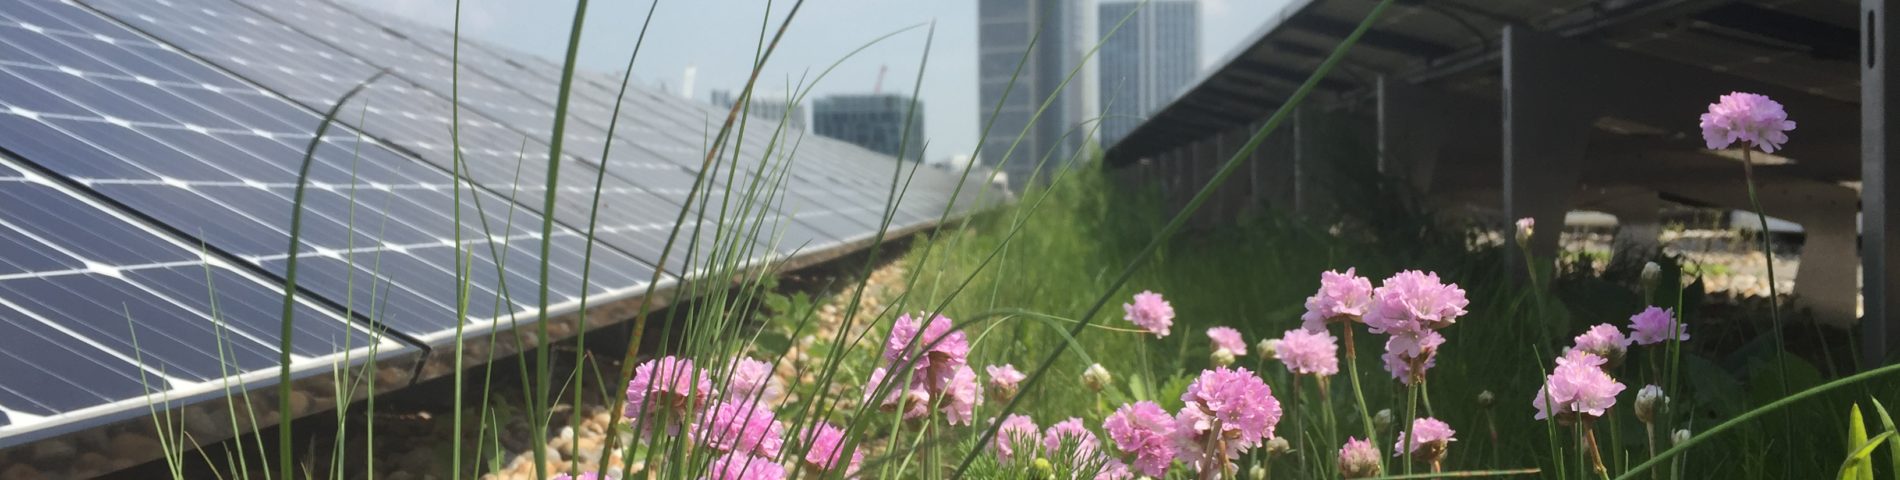 Dachbegrünung mit Photovoltaikanlage, Blumen im Vordergrund, Hochhäuser im Hintergrund